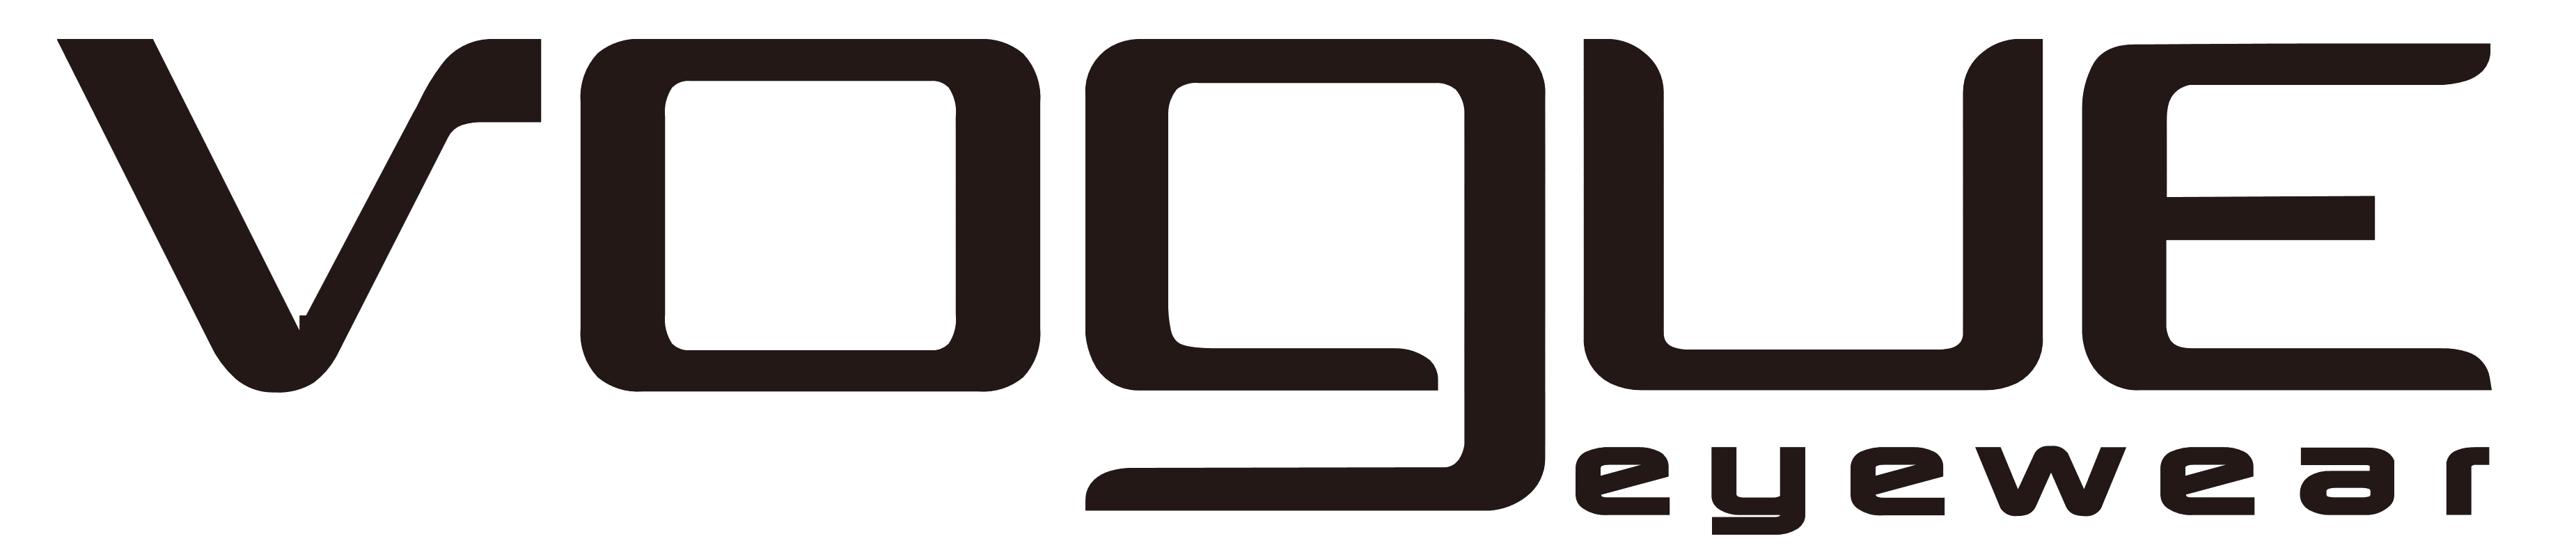 Vogue Eyewear logo, logotype